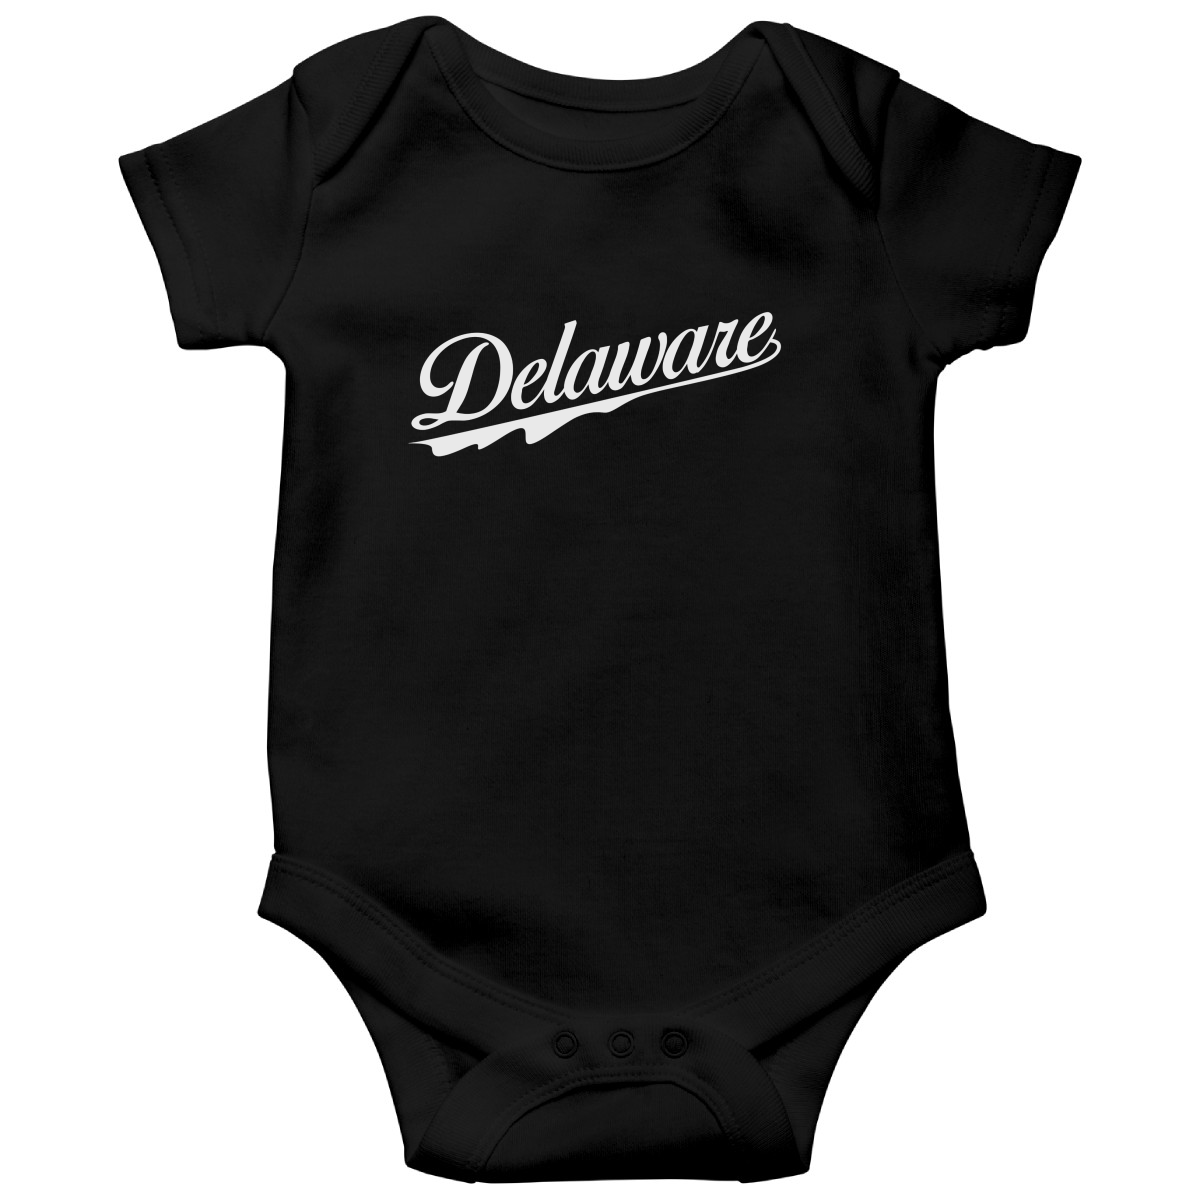 Delaware Baby Bodysuit | Black